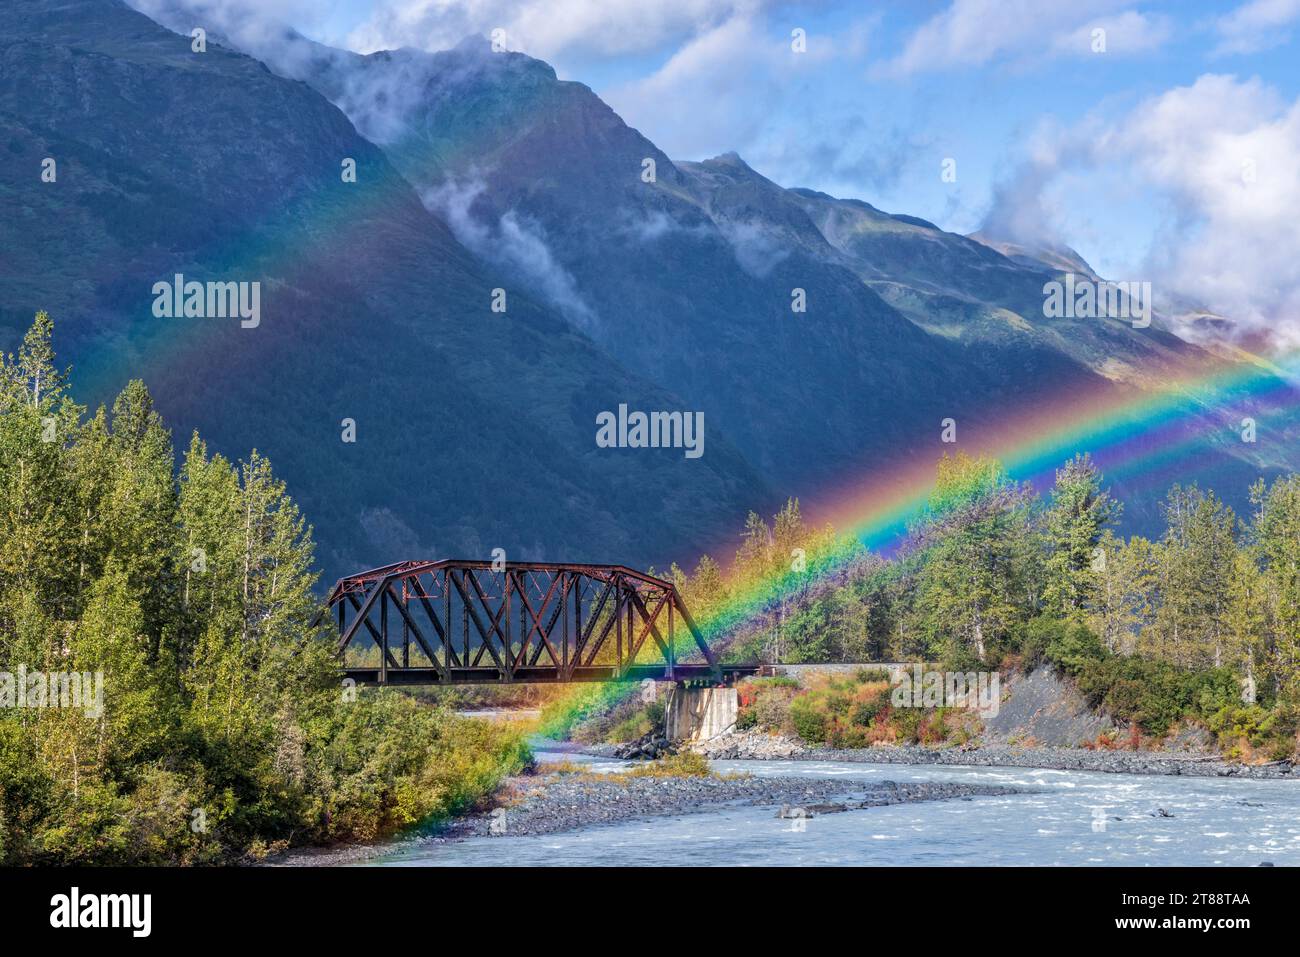 Das Ende (oder der Beginn) eines Doppelregenbogens auf einer Alaska Railroad Brücke über den Placer River in der Nähe des Spencer Glacier im Chugach National Forest, Alaska. Stockfoto